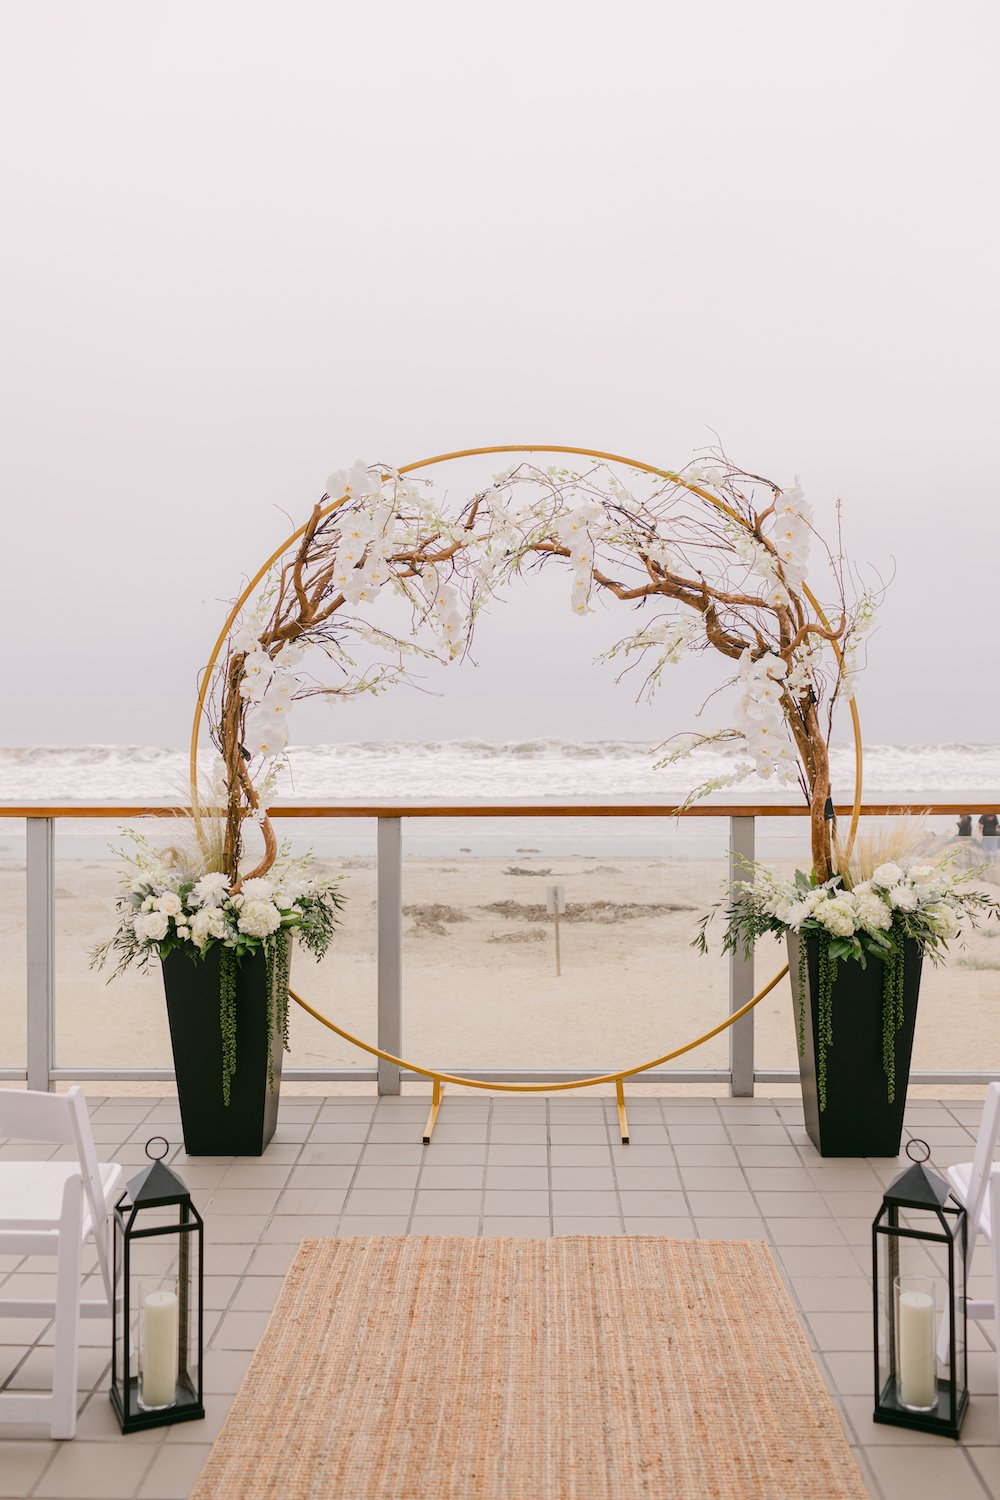 Modern circle arch wedding ceremony backdrop at Malibu West Beach Club.